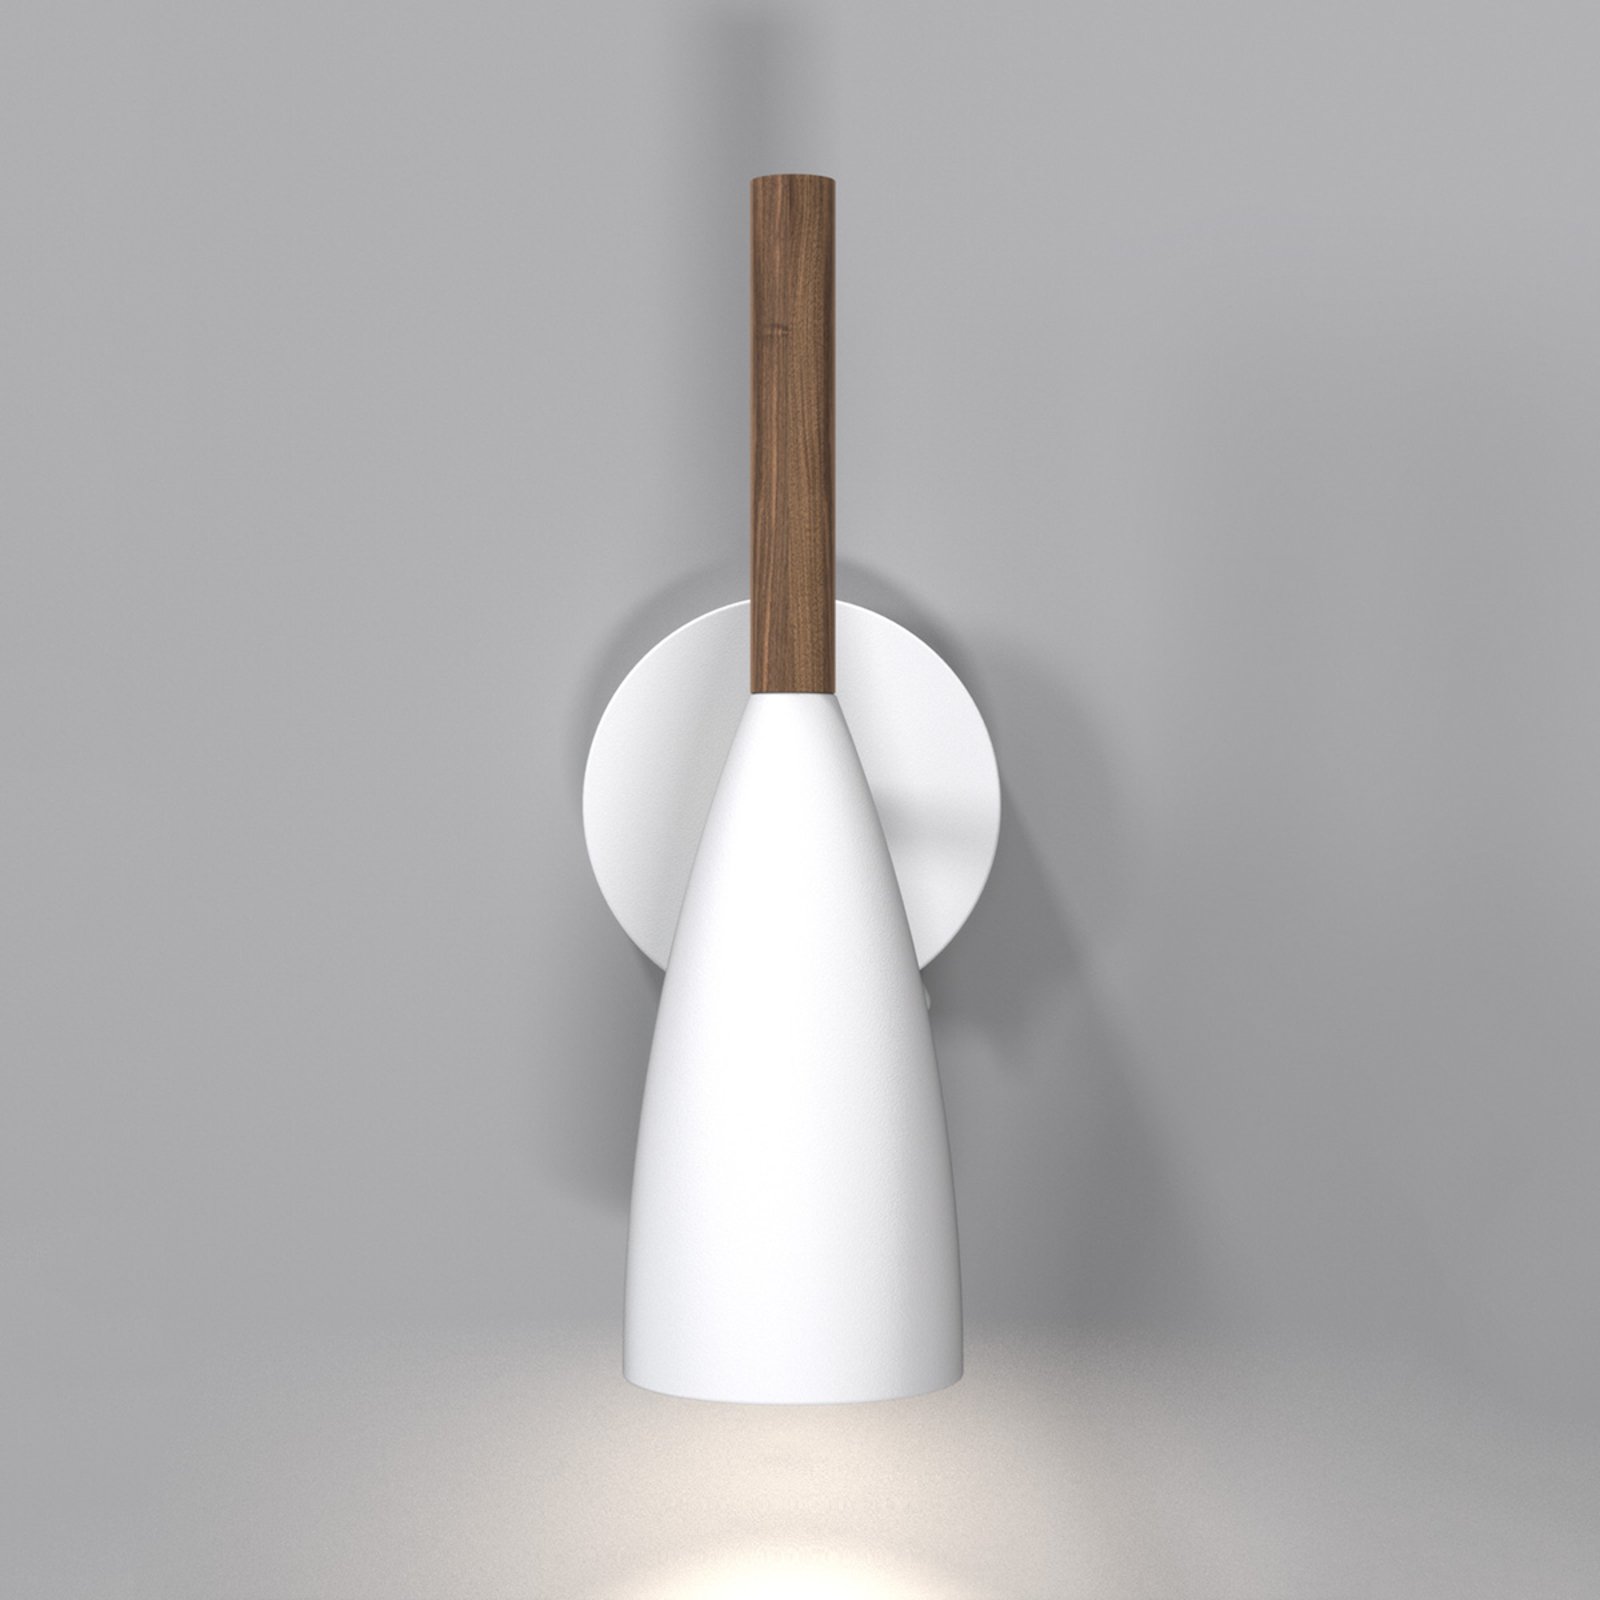 Čista zidna svjetiljka u bijeloj boji s drvenim elementom